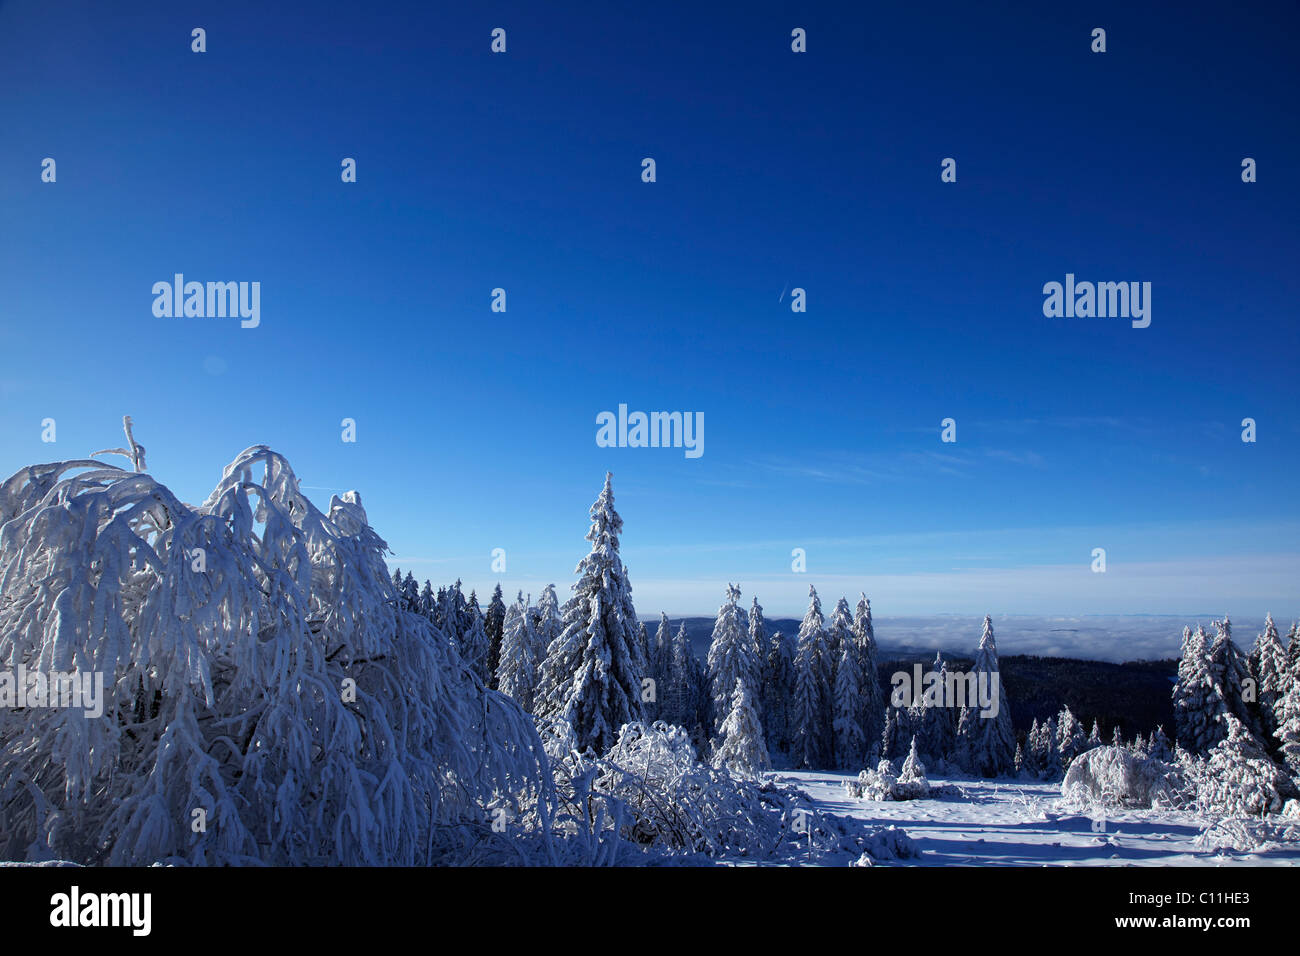 Sapins couverts de neige au milieu d'un paysage de neige, hiver, Forêt-Noire, Bade-Wurtemberg, Allemagne, Europe Banque D'Images